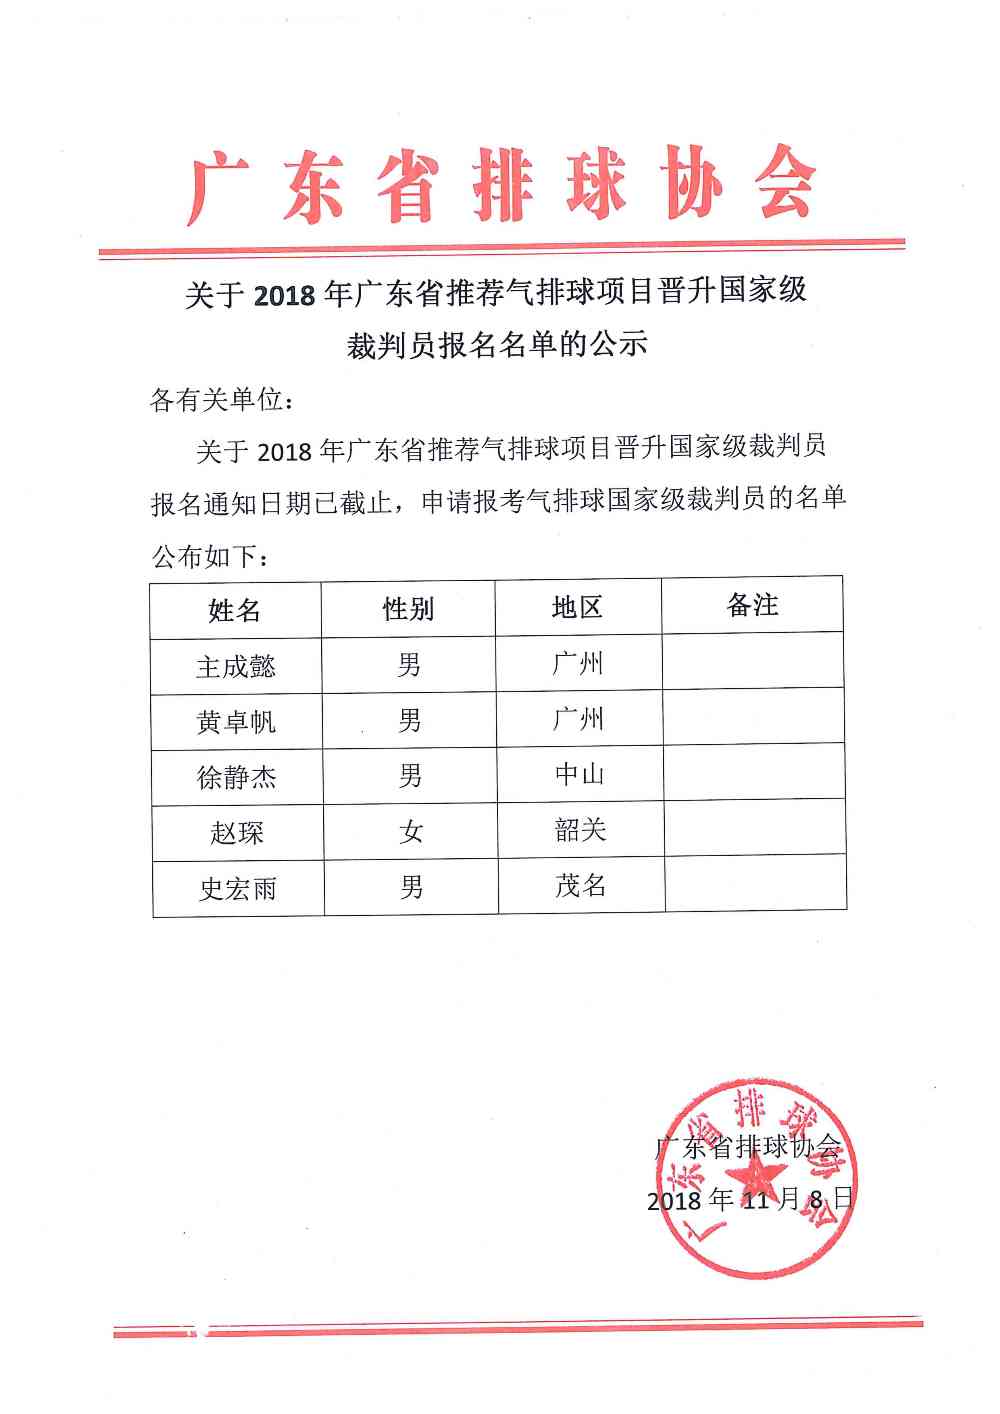 20181109关于2018广东省推荐气排球项目晋升国家级裁判员报名名单的公示.jpg